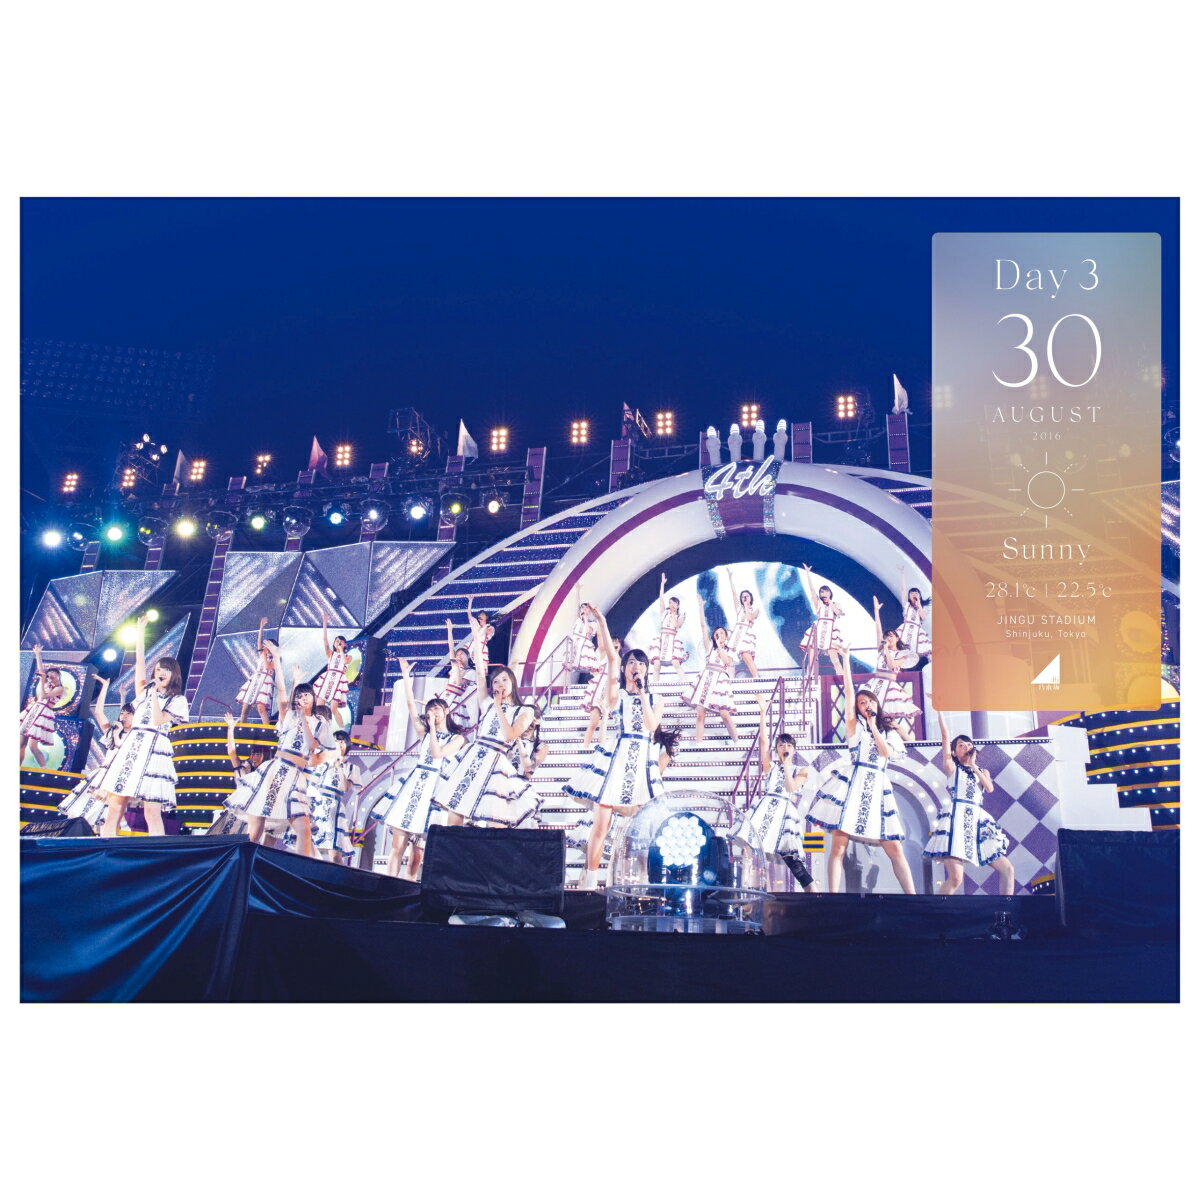 2016年夏に神宮球場にて行われた乃木坂46「4th YEAR BIRTHDAY LIVE」が映像作品となってリリース!!

＜収録内容＞
■10thシングル「何度目の青空か？」〜15thシングル「裸足でSummer」
※収録内容は変更となる場合がございます。